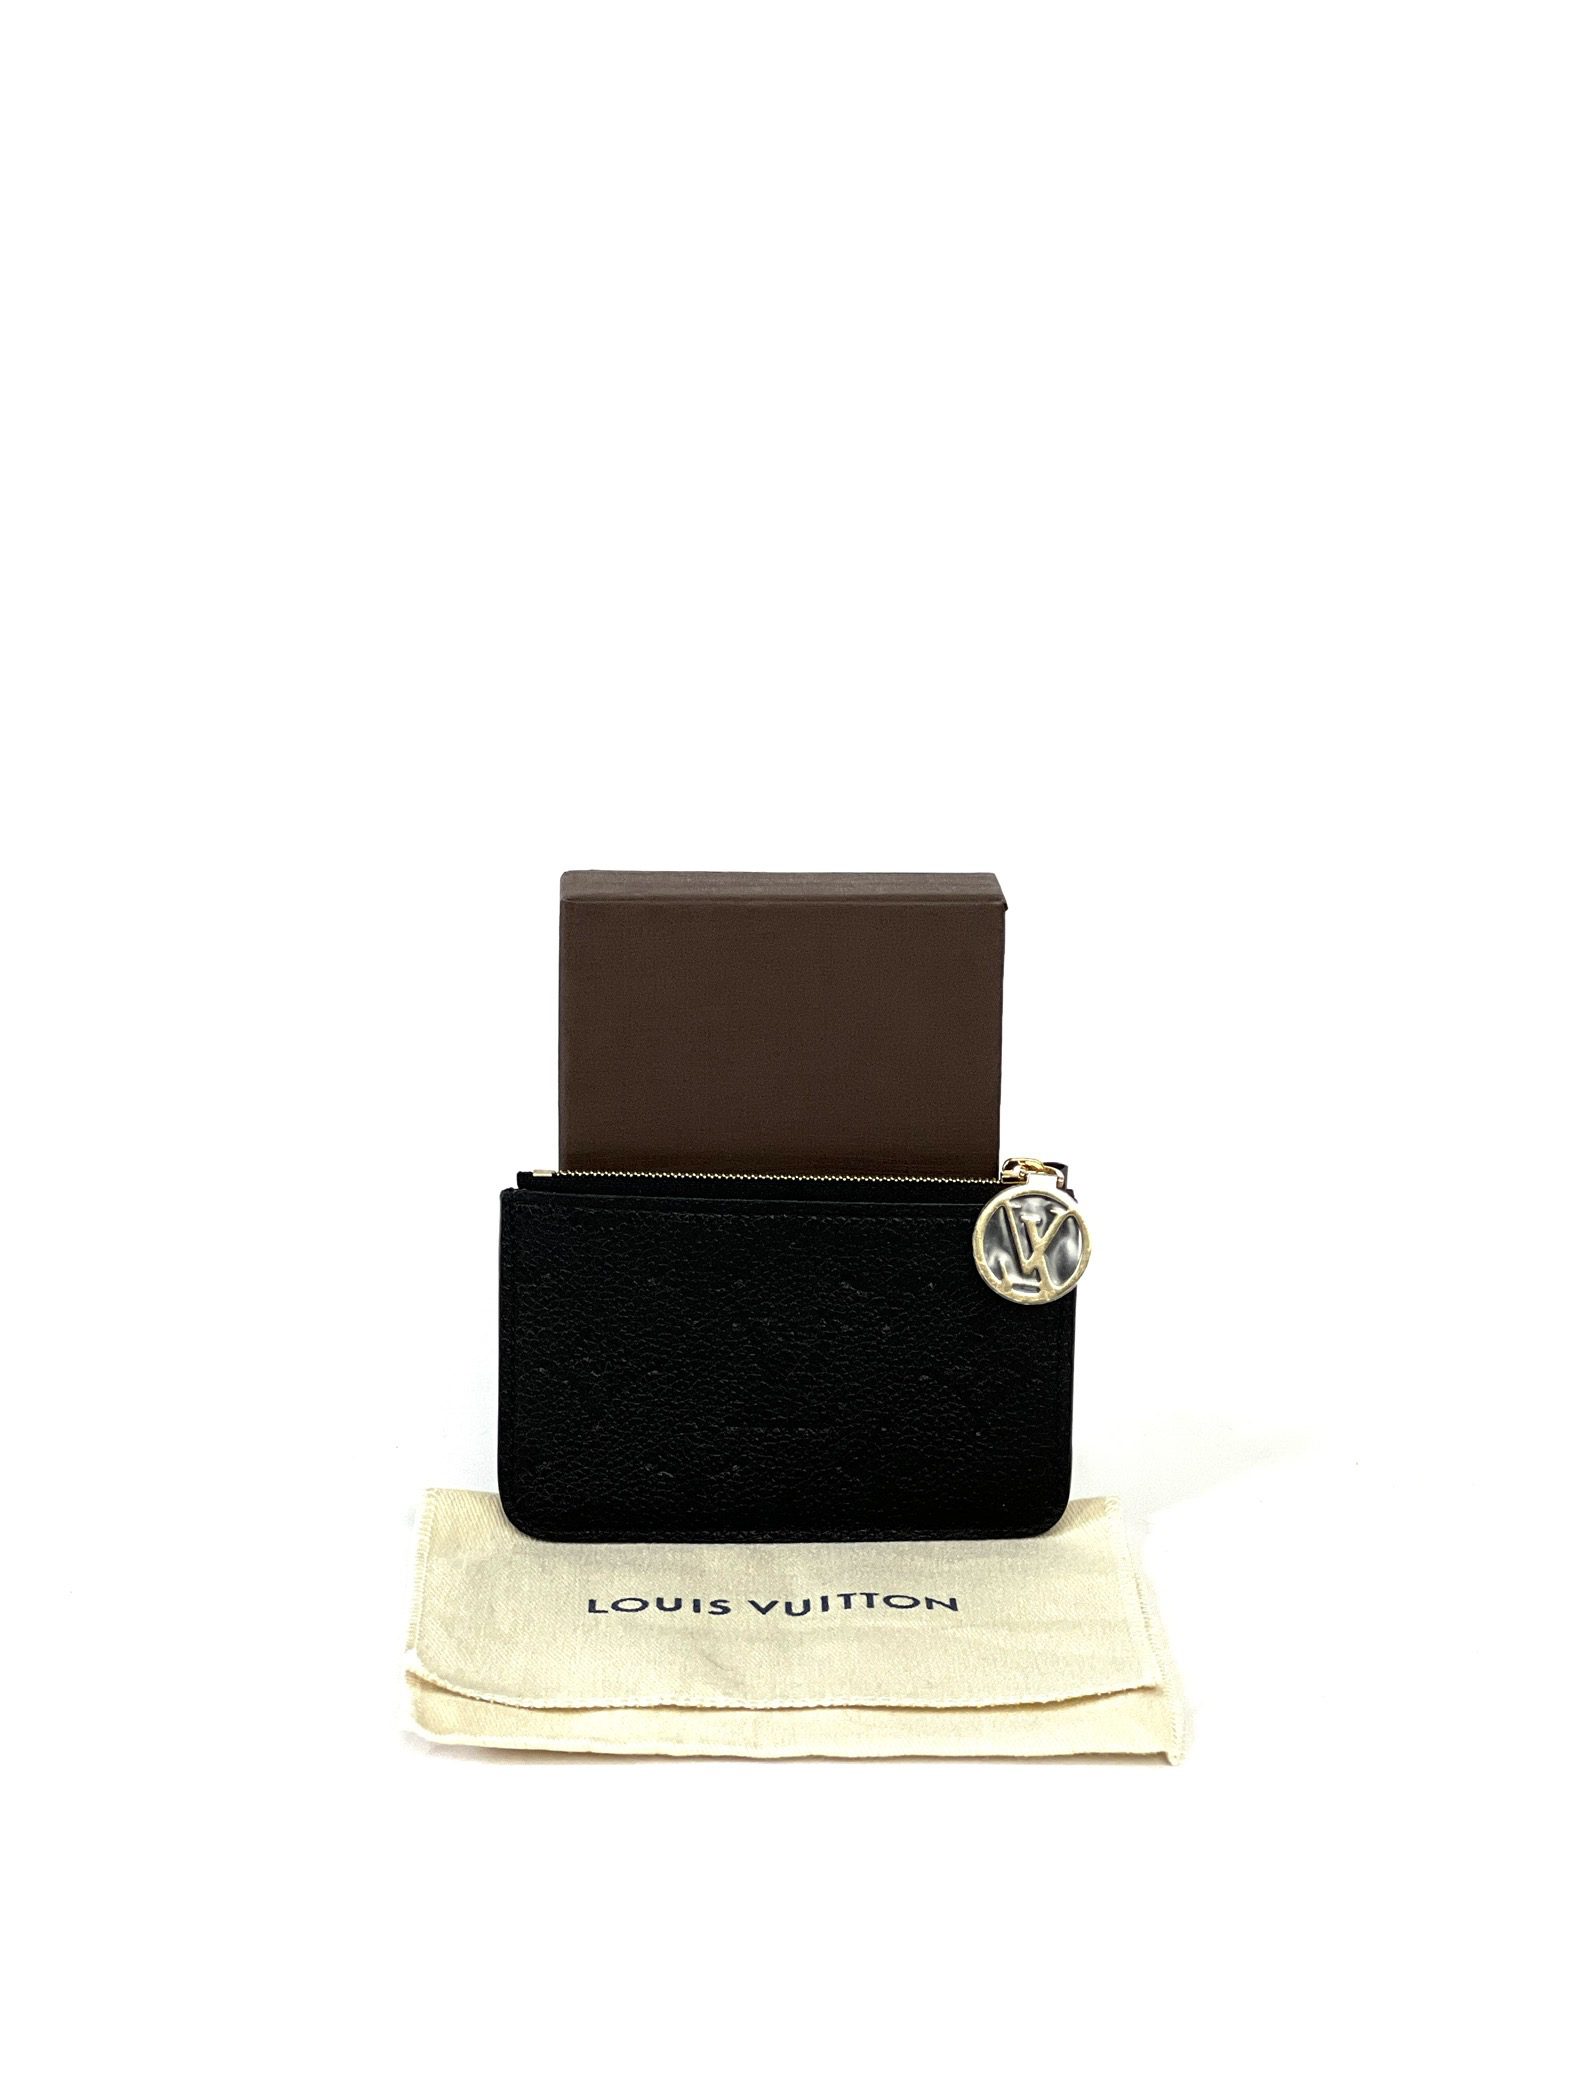 Louis Vuitton Monogram Empreinte Black Romy Card Holder - A World